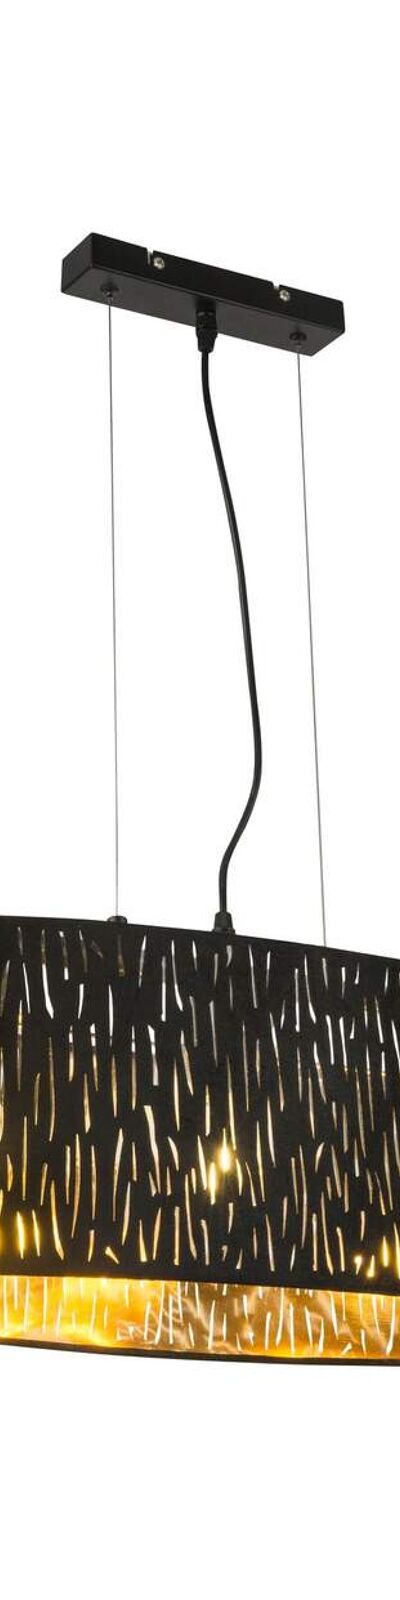 Suspension en velours design Tuxon - L. 65 x H. 140 cm - Noir